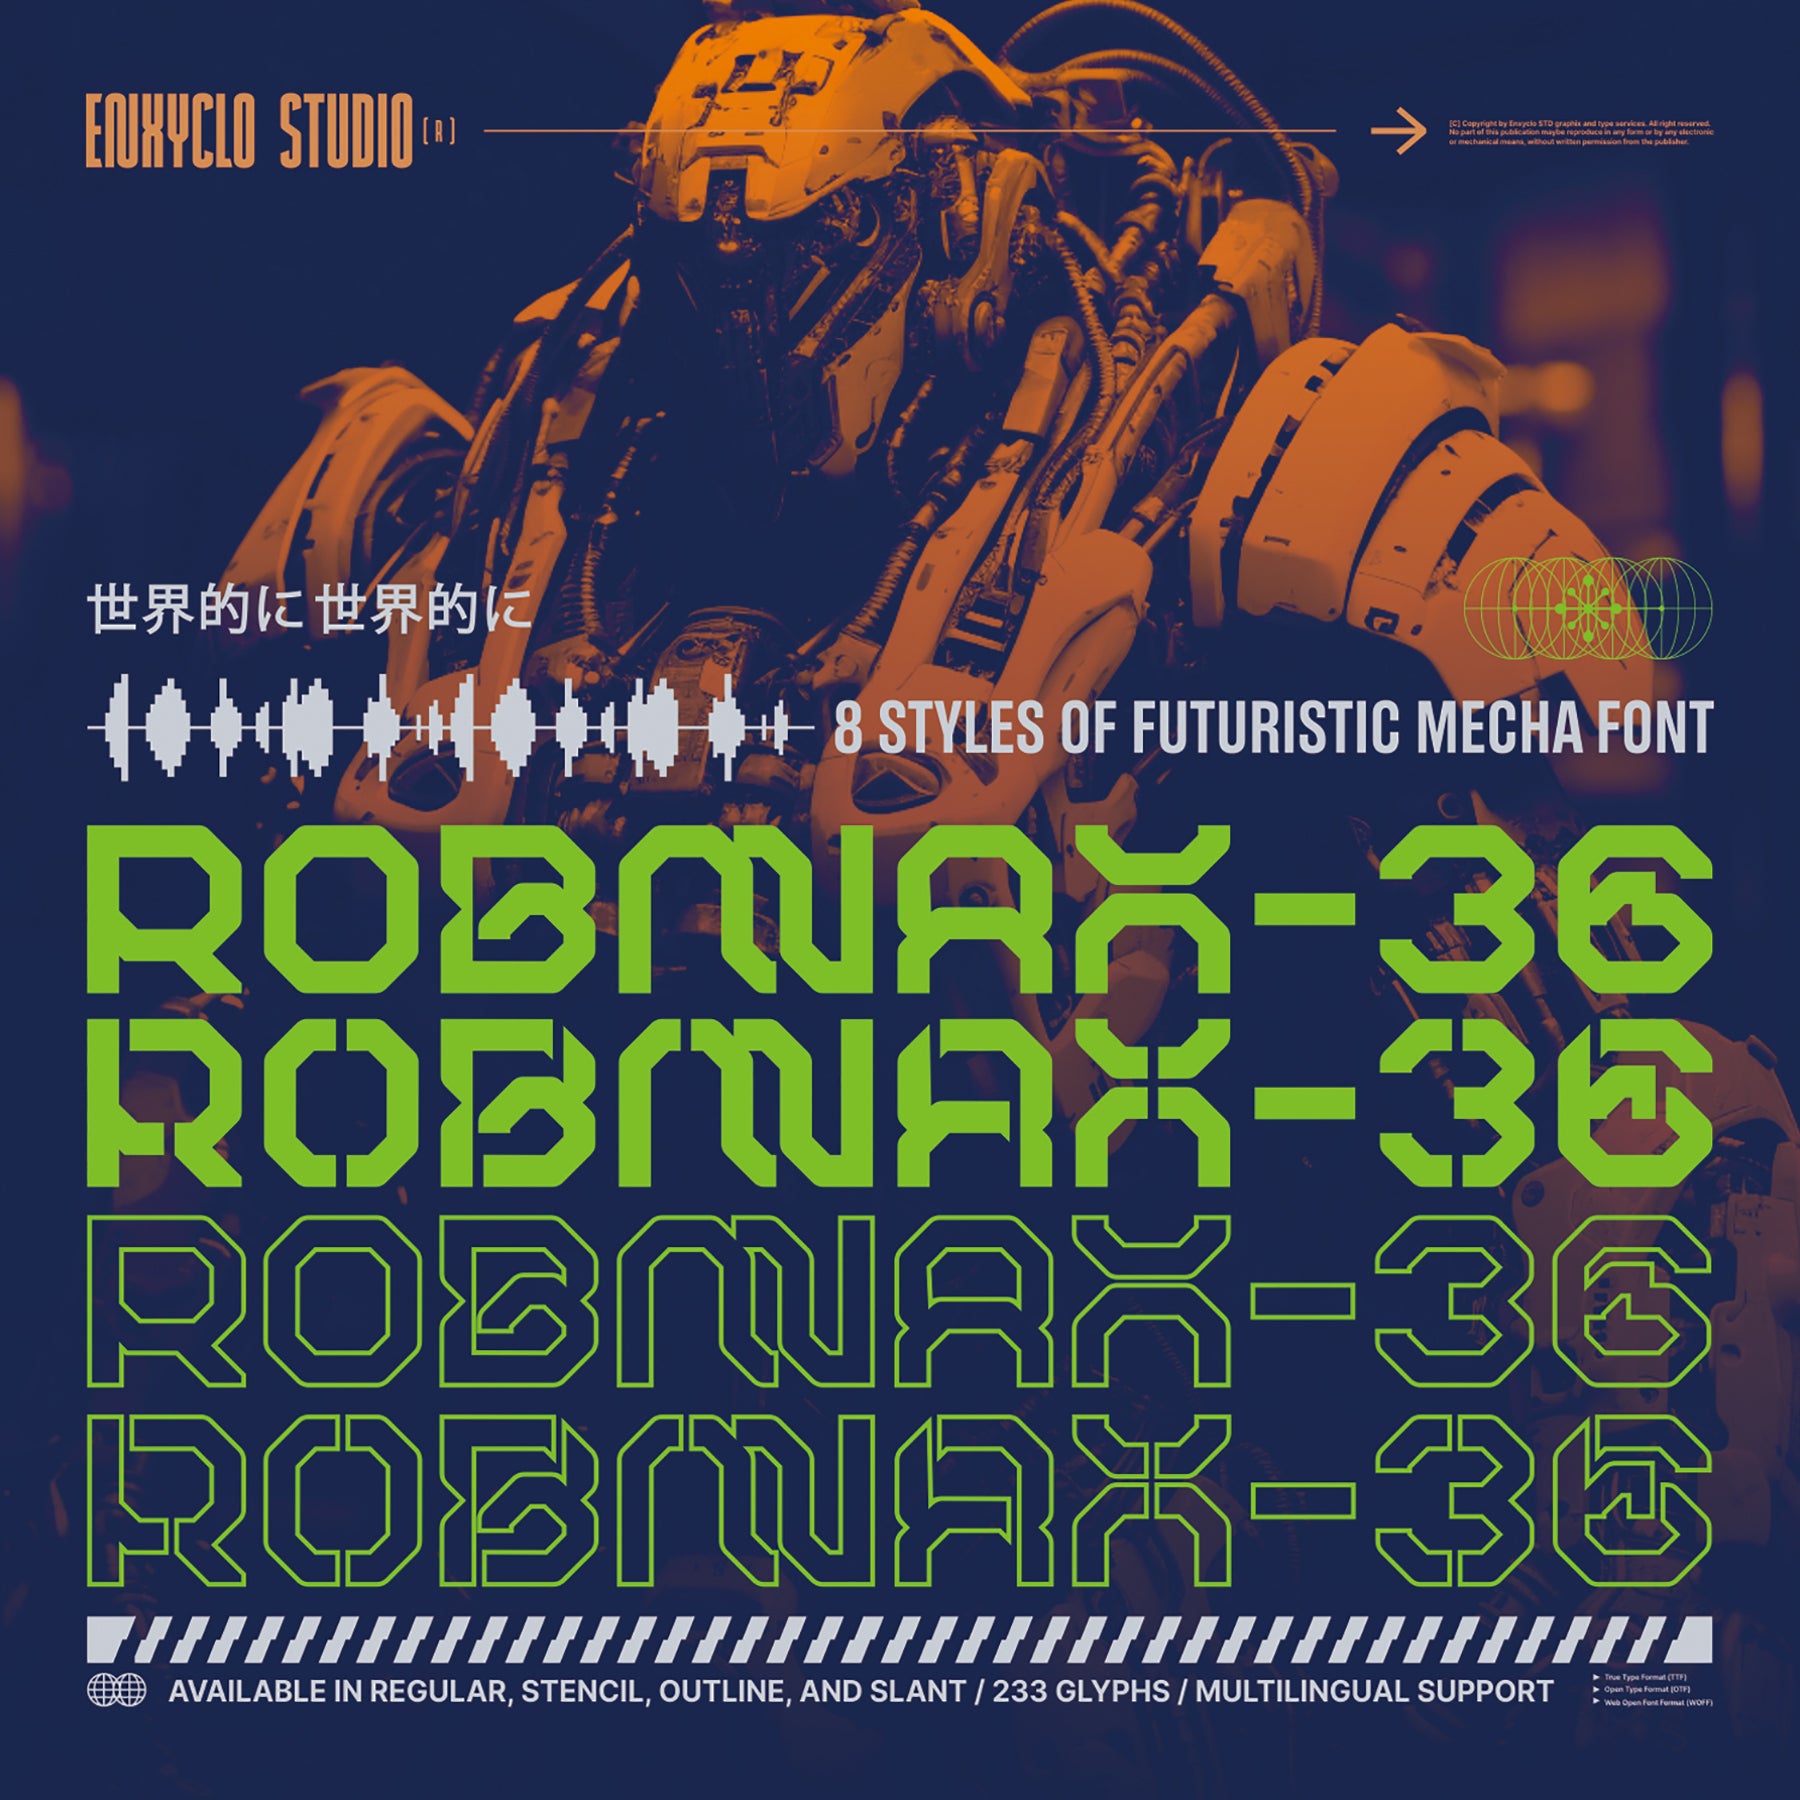 ROBMAX-36 Typeface